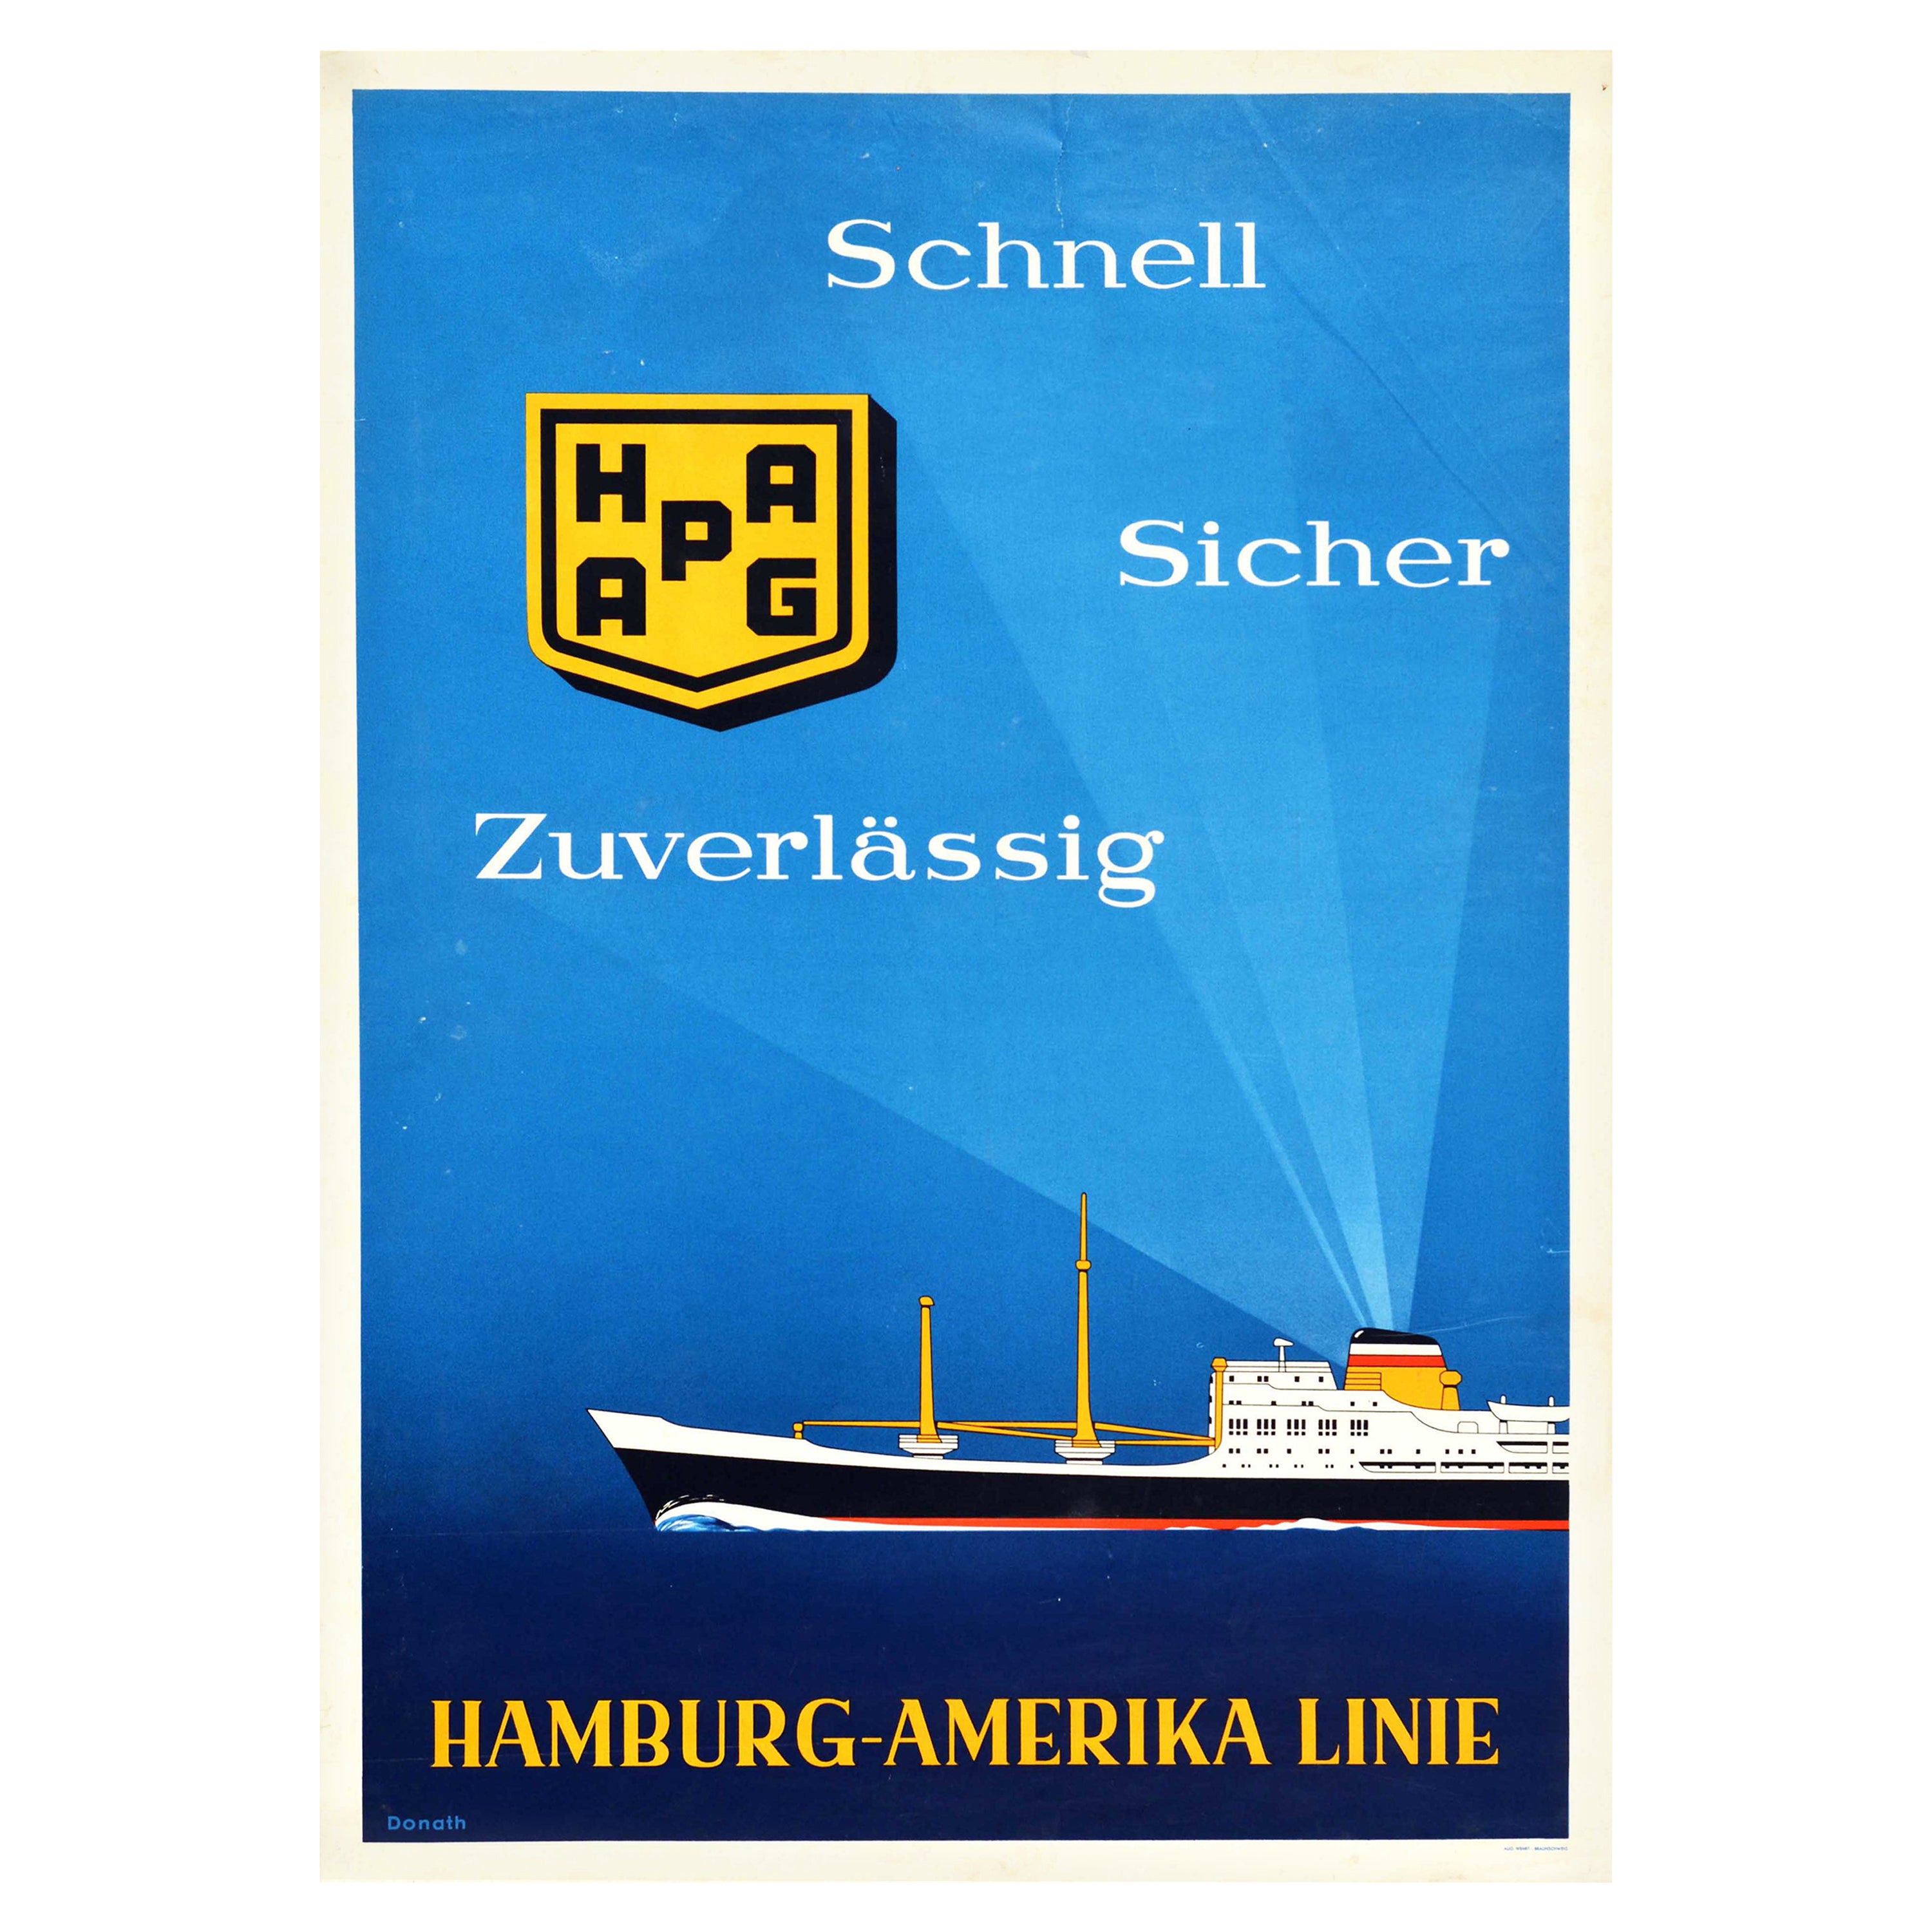 Original Vintage Travel Poster Hamburg America Liner Fast Safe Reliable Ship Art For Sale